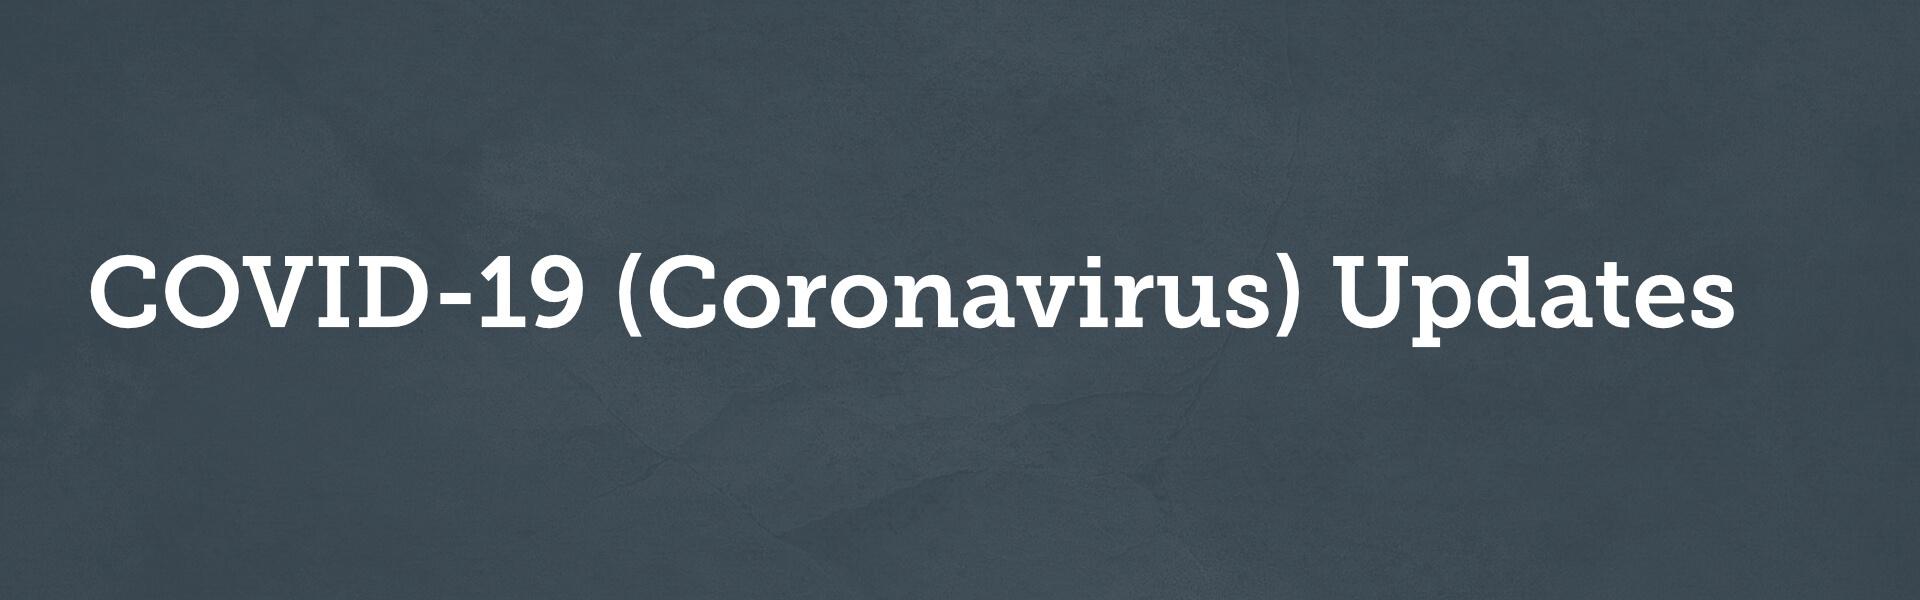 COVID-19 (Coronavirus) Updates